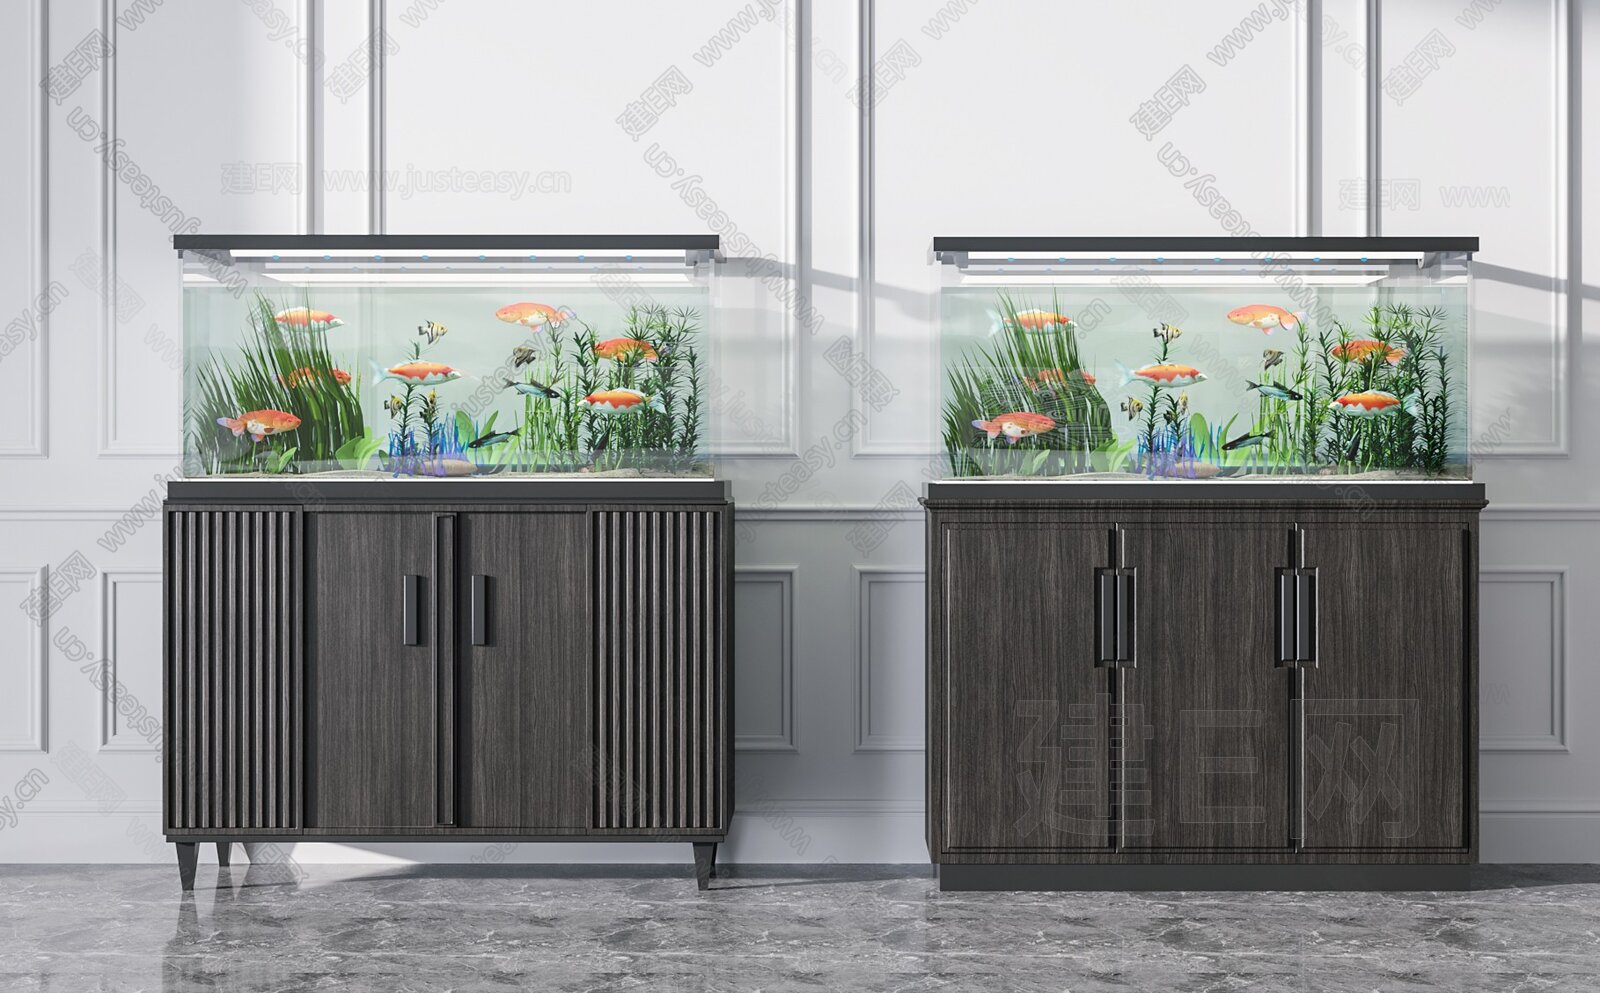 超白新款卧室客厅中型玻璃下过滤生态鱼缸免换水隔断中大型水族箱-阿里巴巴